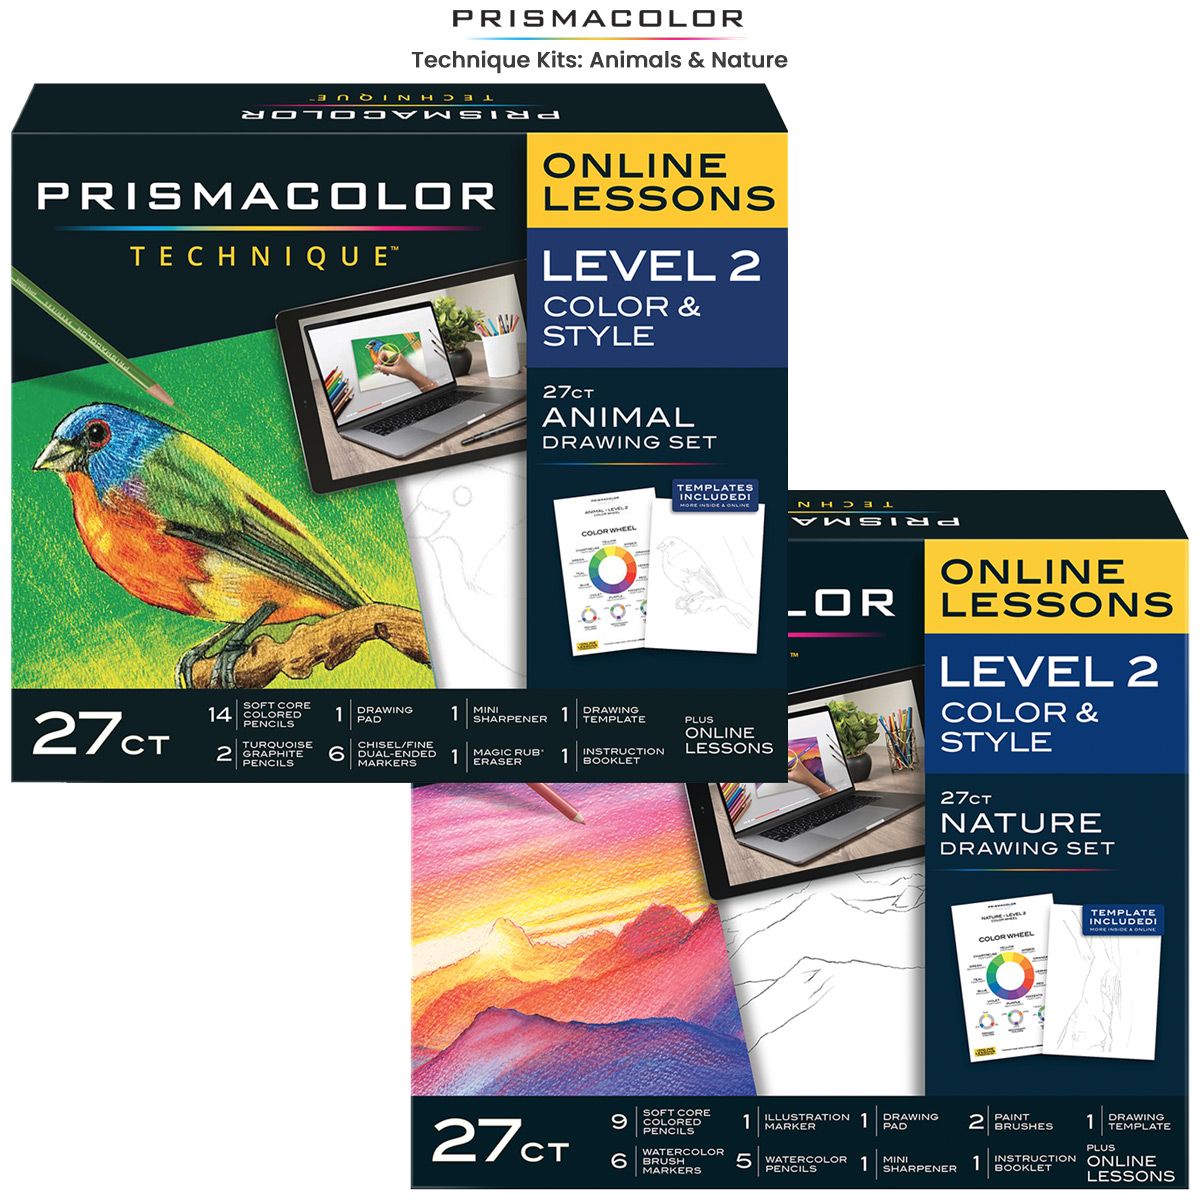 https://www.jerrysartarama.com/media/catalog/product/cache/ecb49a32eeb5603594b082bd5fe65733/p/r/prismacolor-colored-pencils-technique-kits-main.jpg